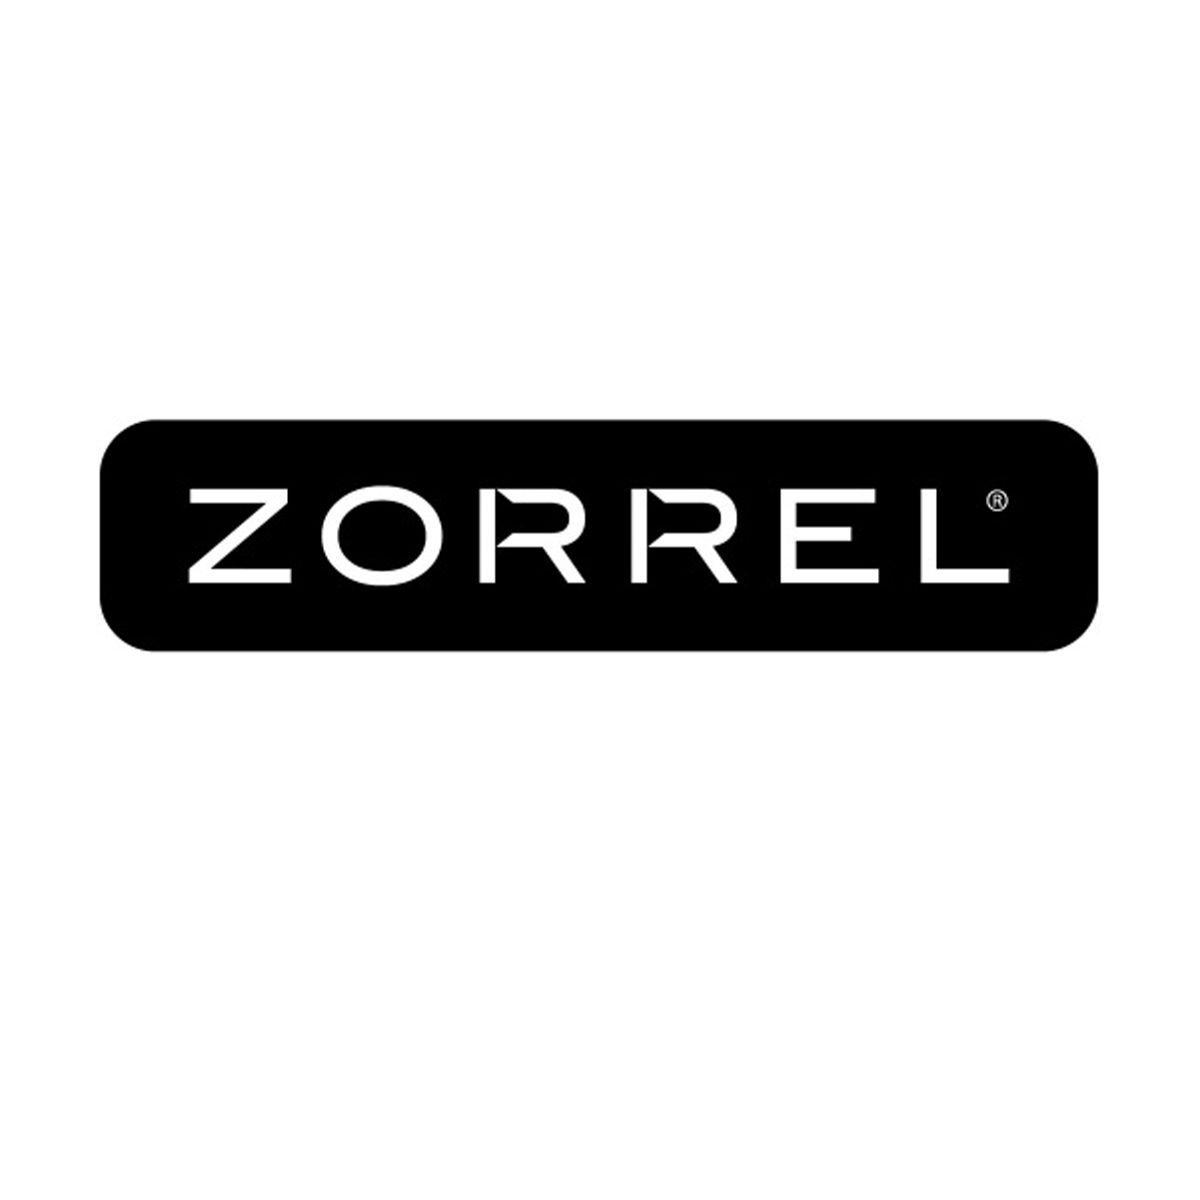 Zorrel Logo - Zorrel | Zorrel | Mountain trails, Flip clock, Shopping